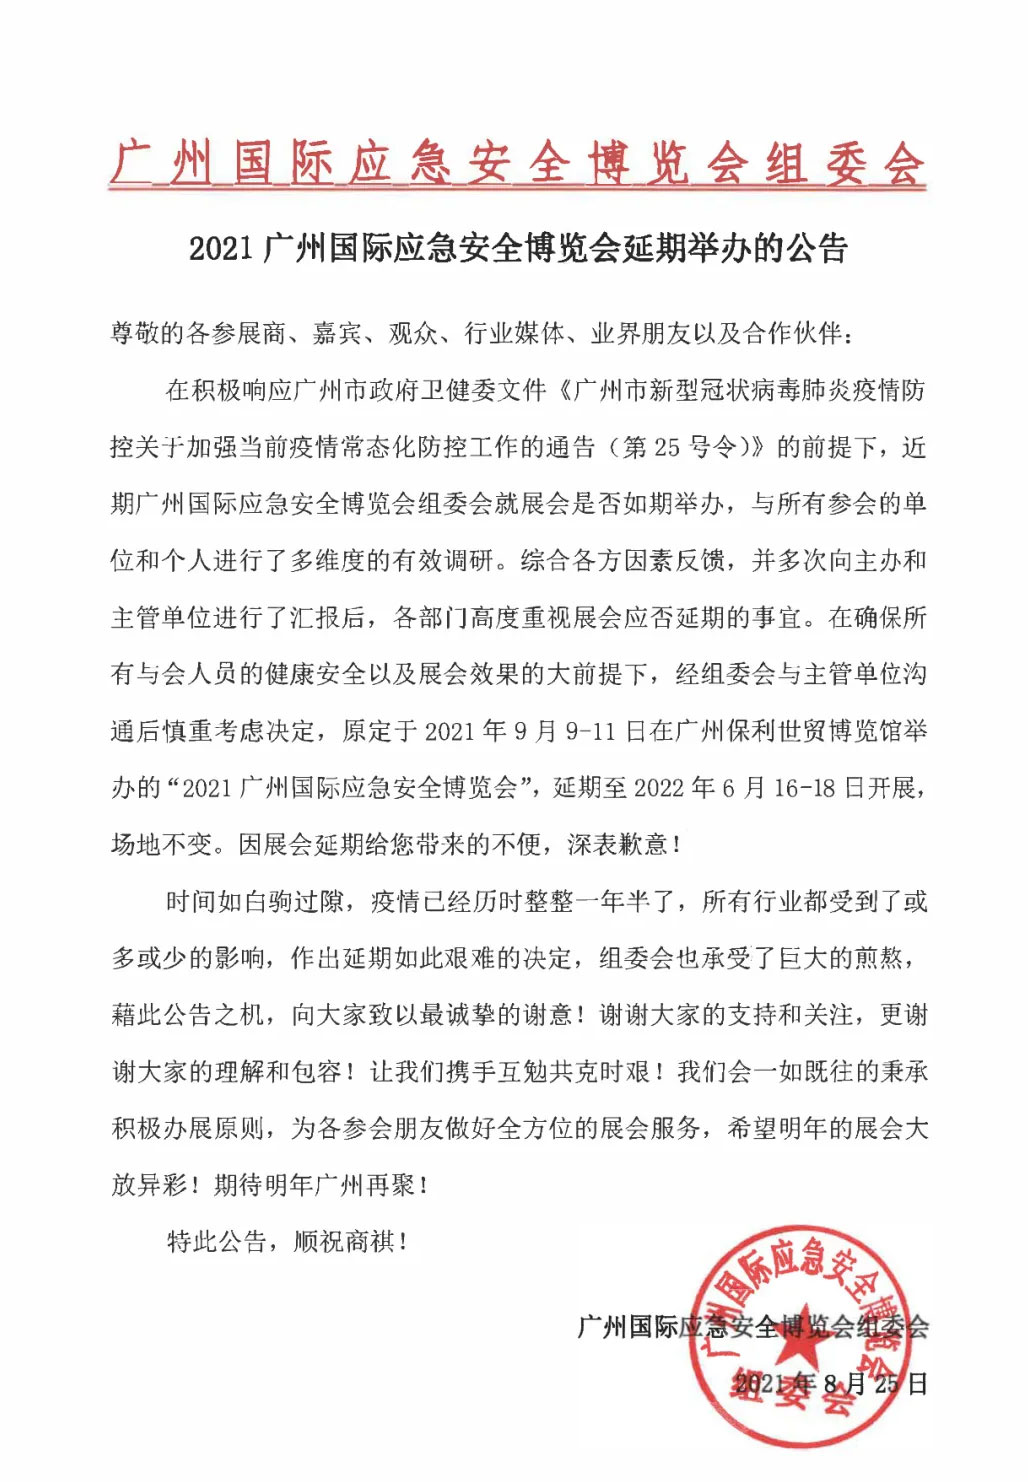 2021广州国际应急安全博览会延期举办的公告